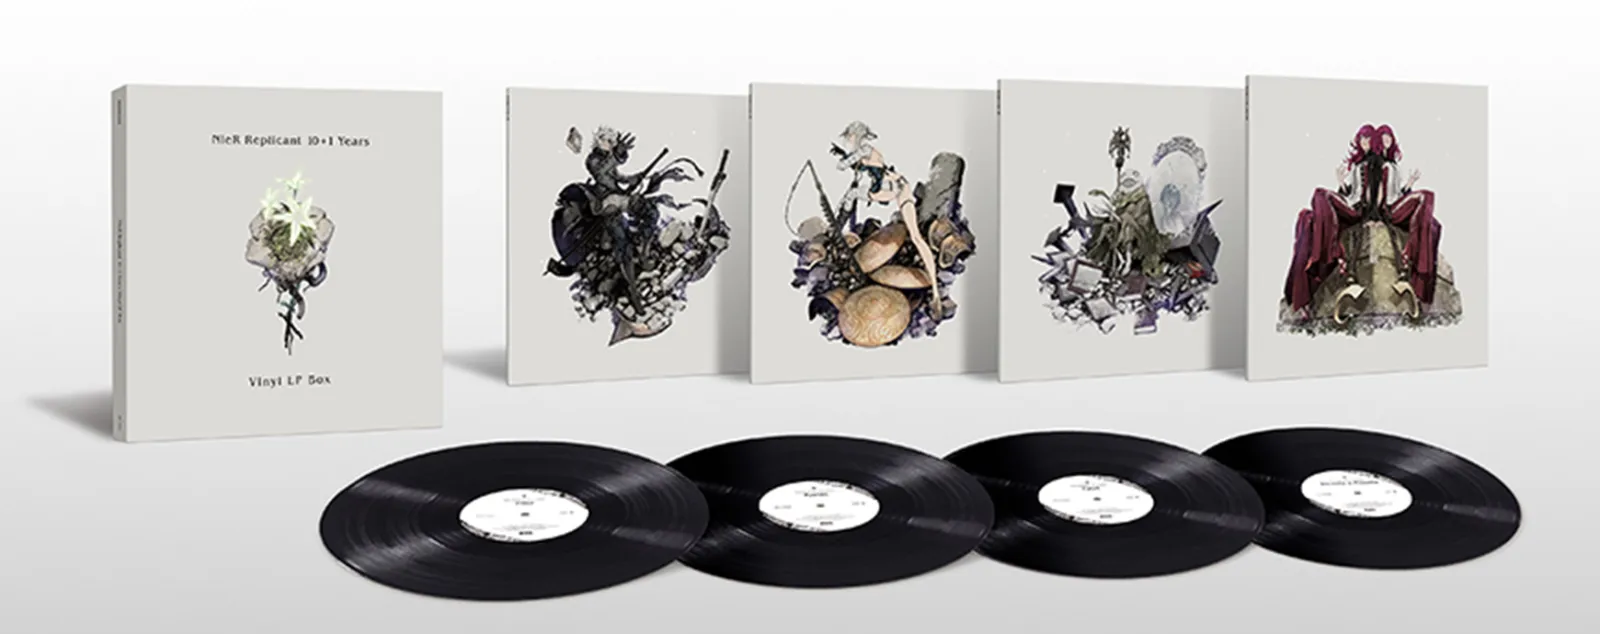 黑胶唱片套装《NieR Replicant -10+1 Years-Vinyl LP Box Set》今日预约开始